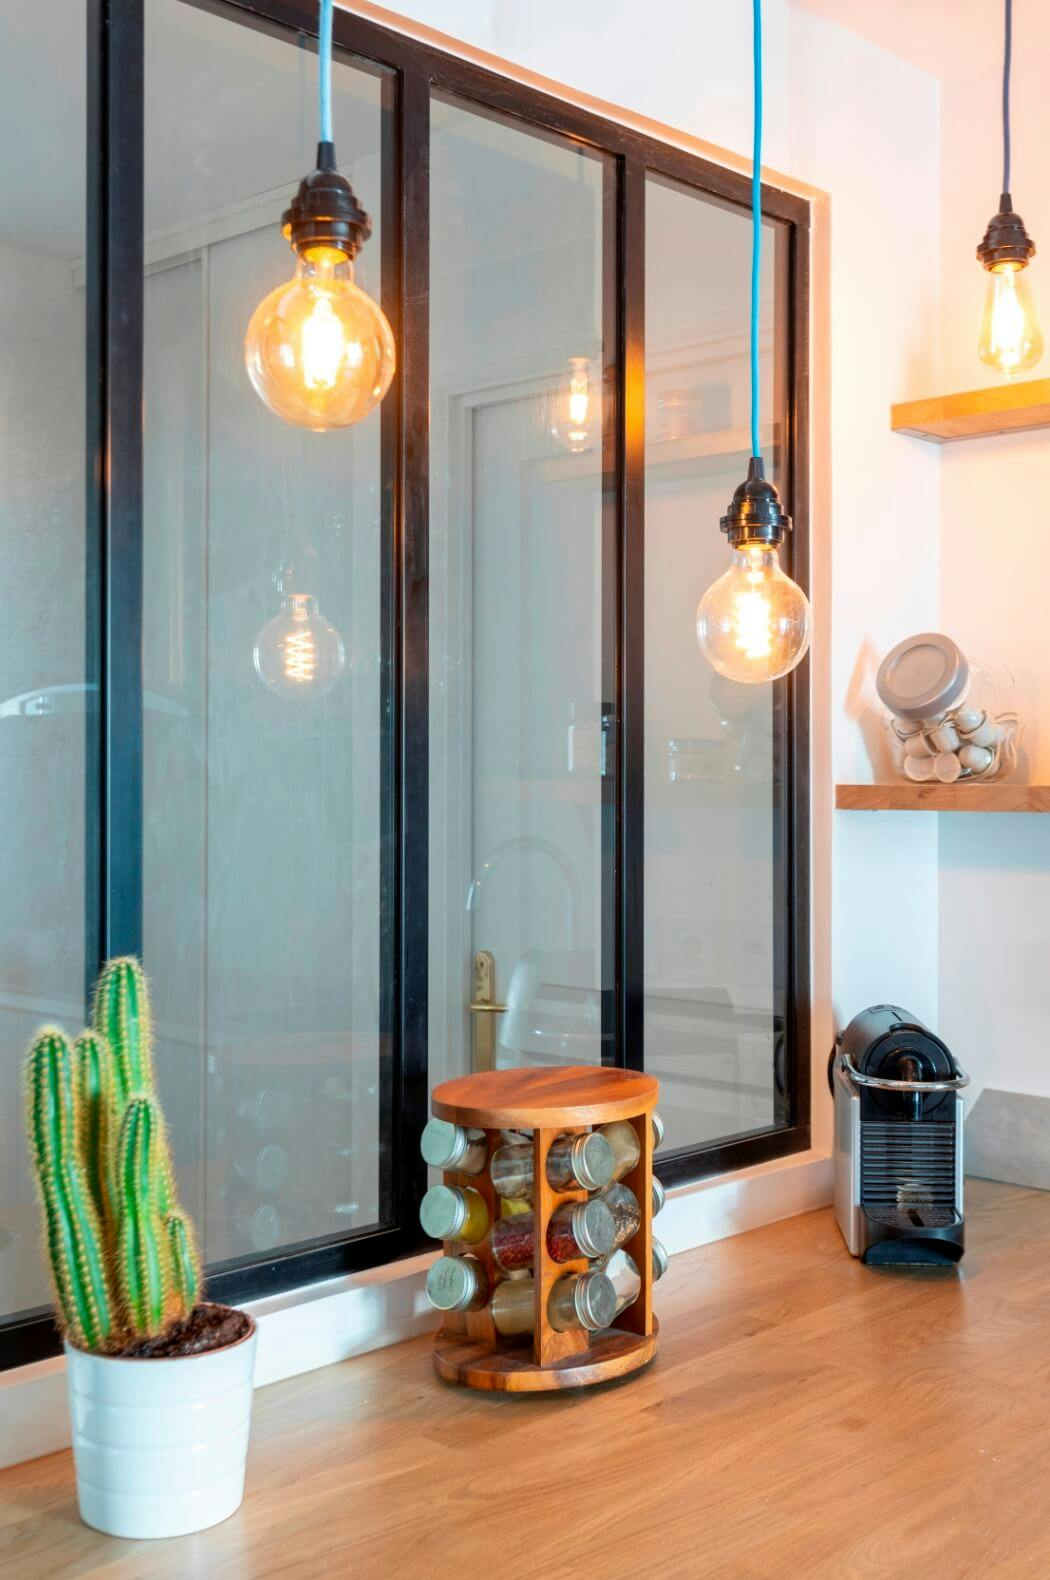 Rénovation d'une cuisine avec verrière d'atelier et ampoules déco vintage